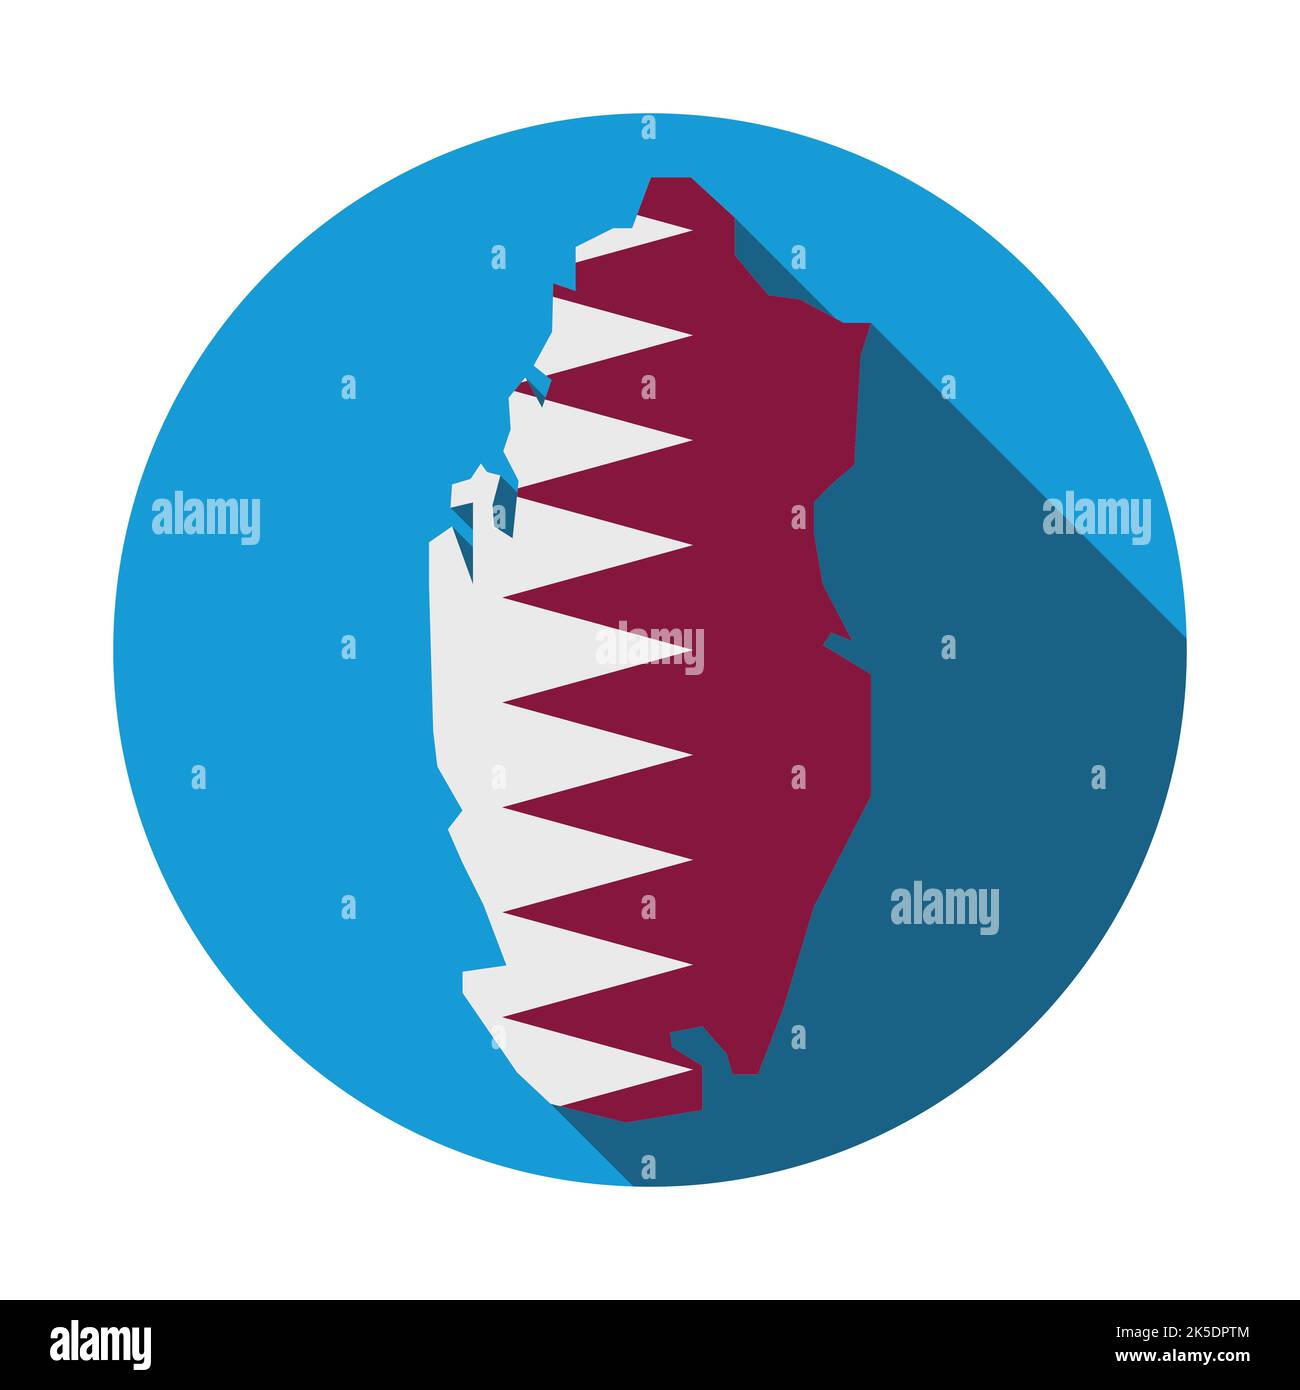 Design in stile piatto e lunga ombra, con pulsante blu e mappa del Qatar decorata con la sua bandiera. Illustrazione Vettoriale